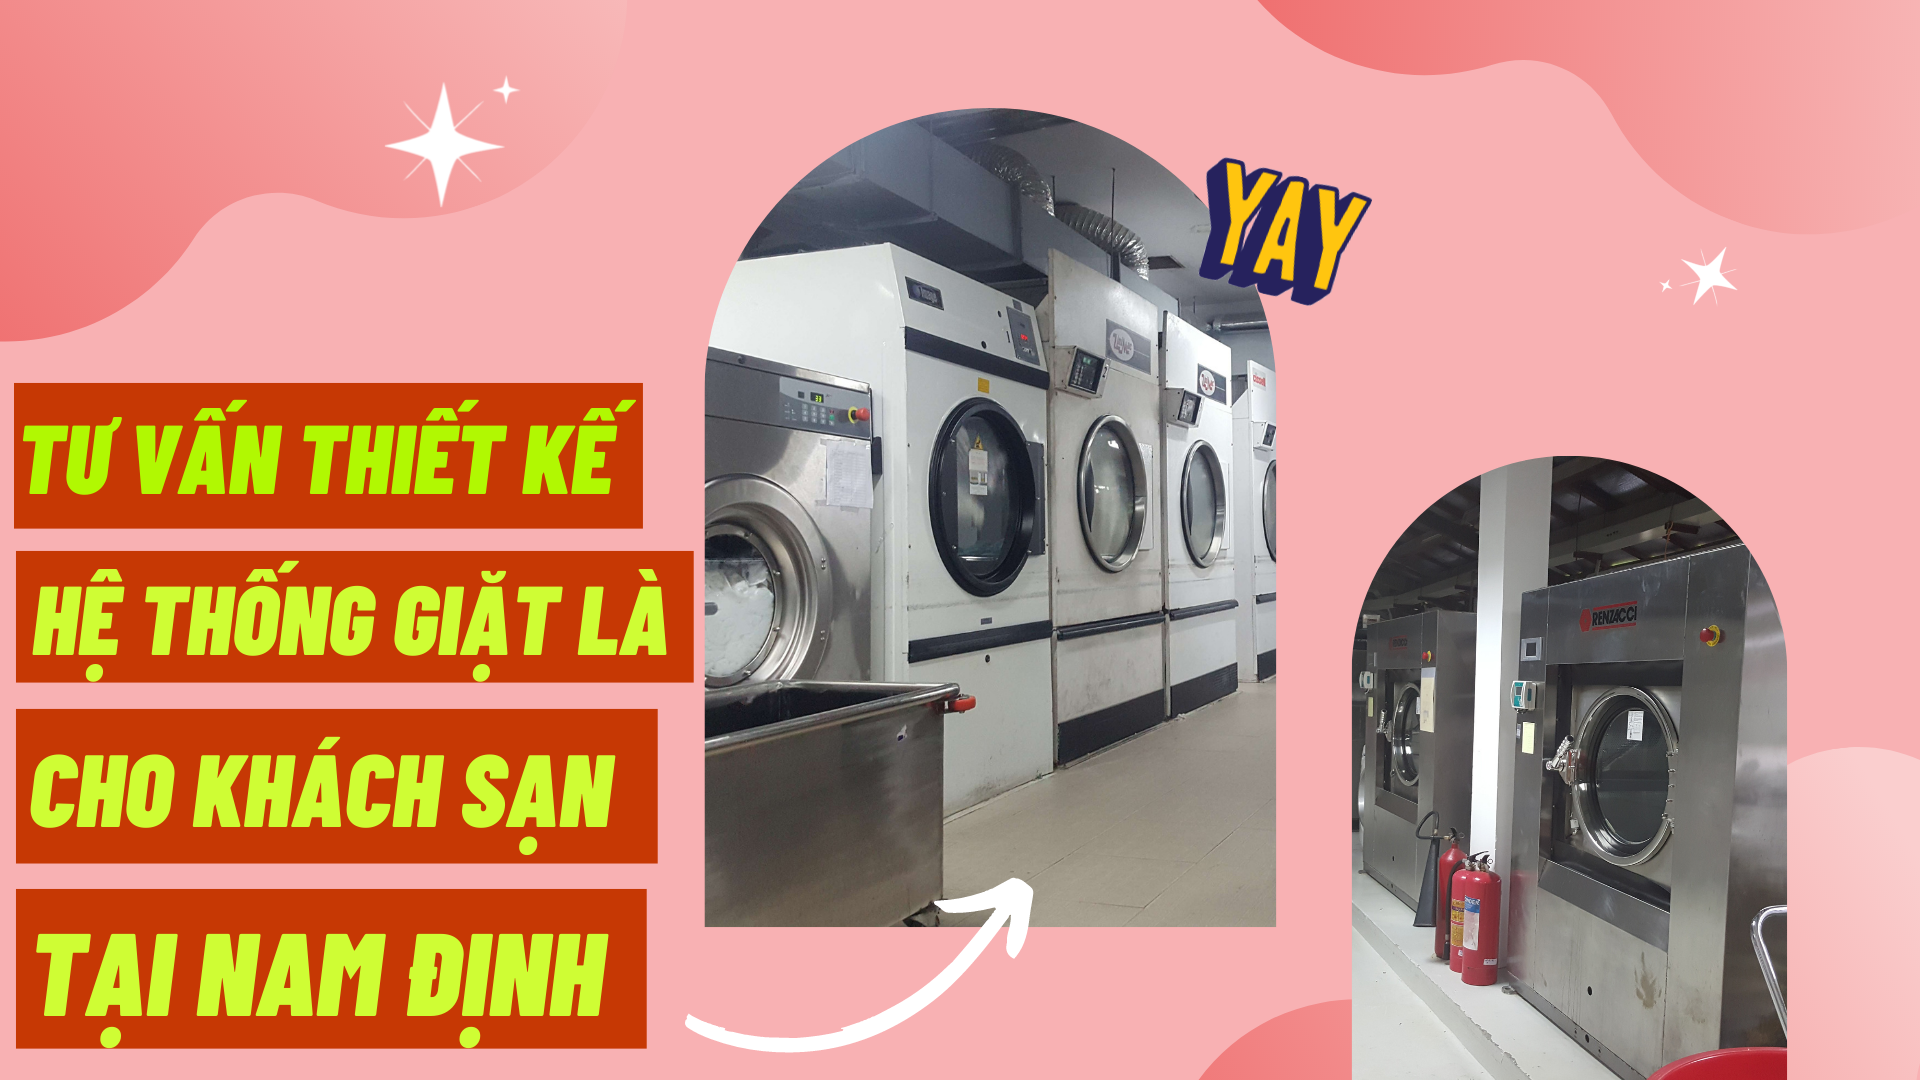 Tư vấn thiết kế hệ thống giặt là cho khách sạn tại Nam Định